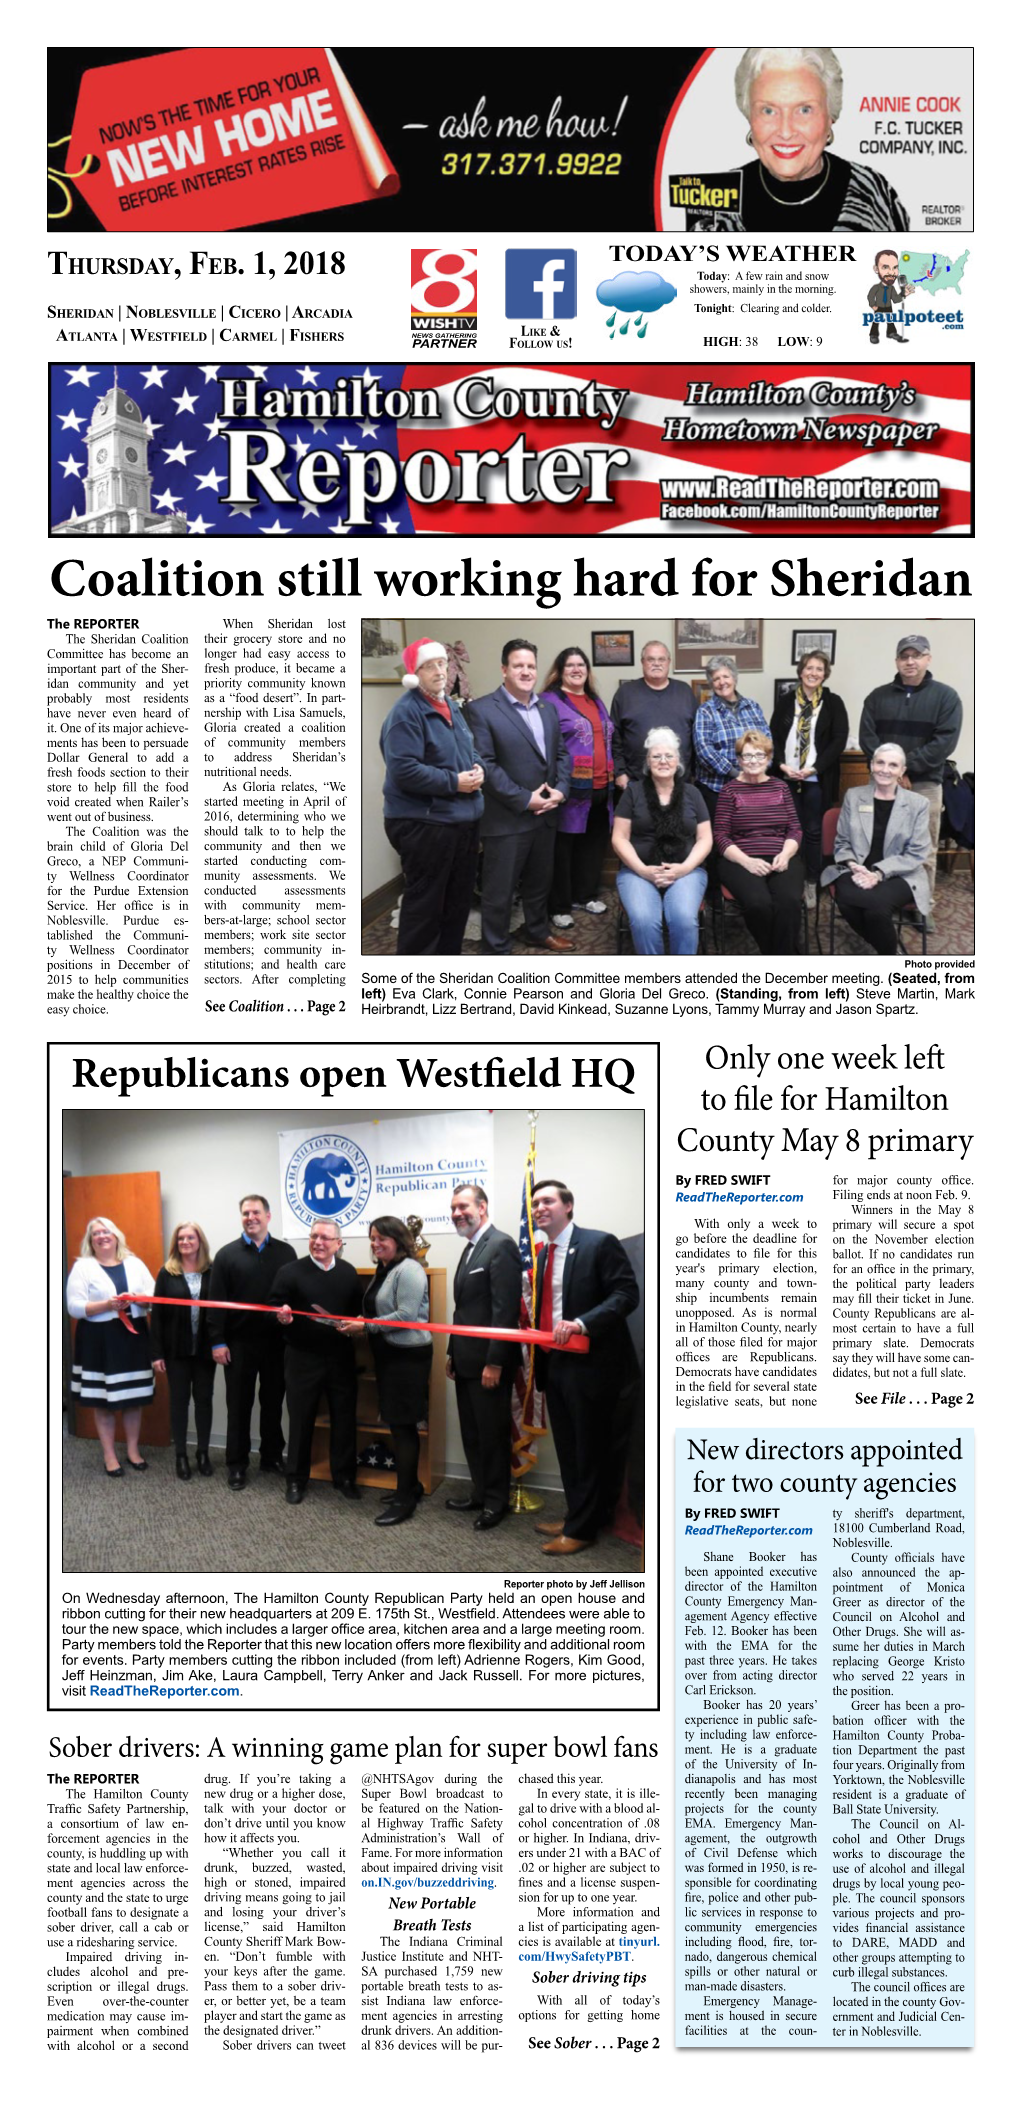 Coalition Still Working Hard for Sheridan